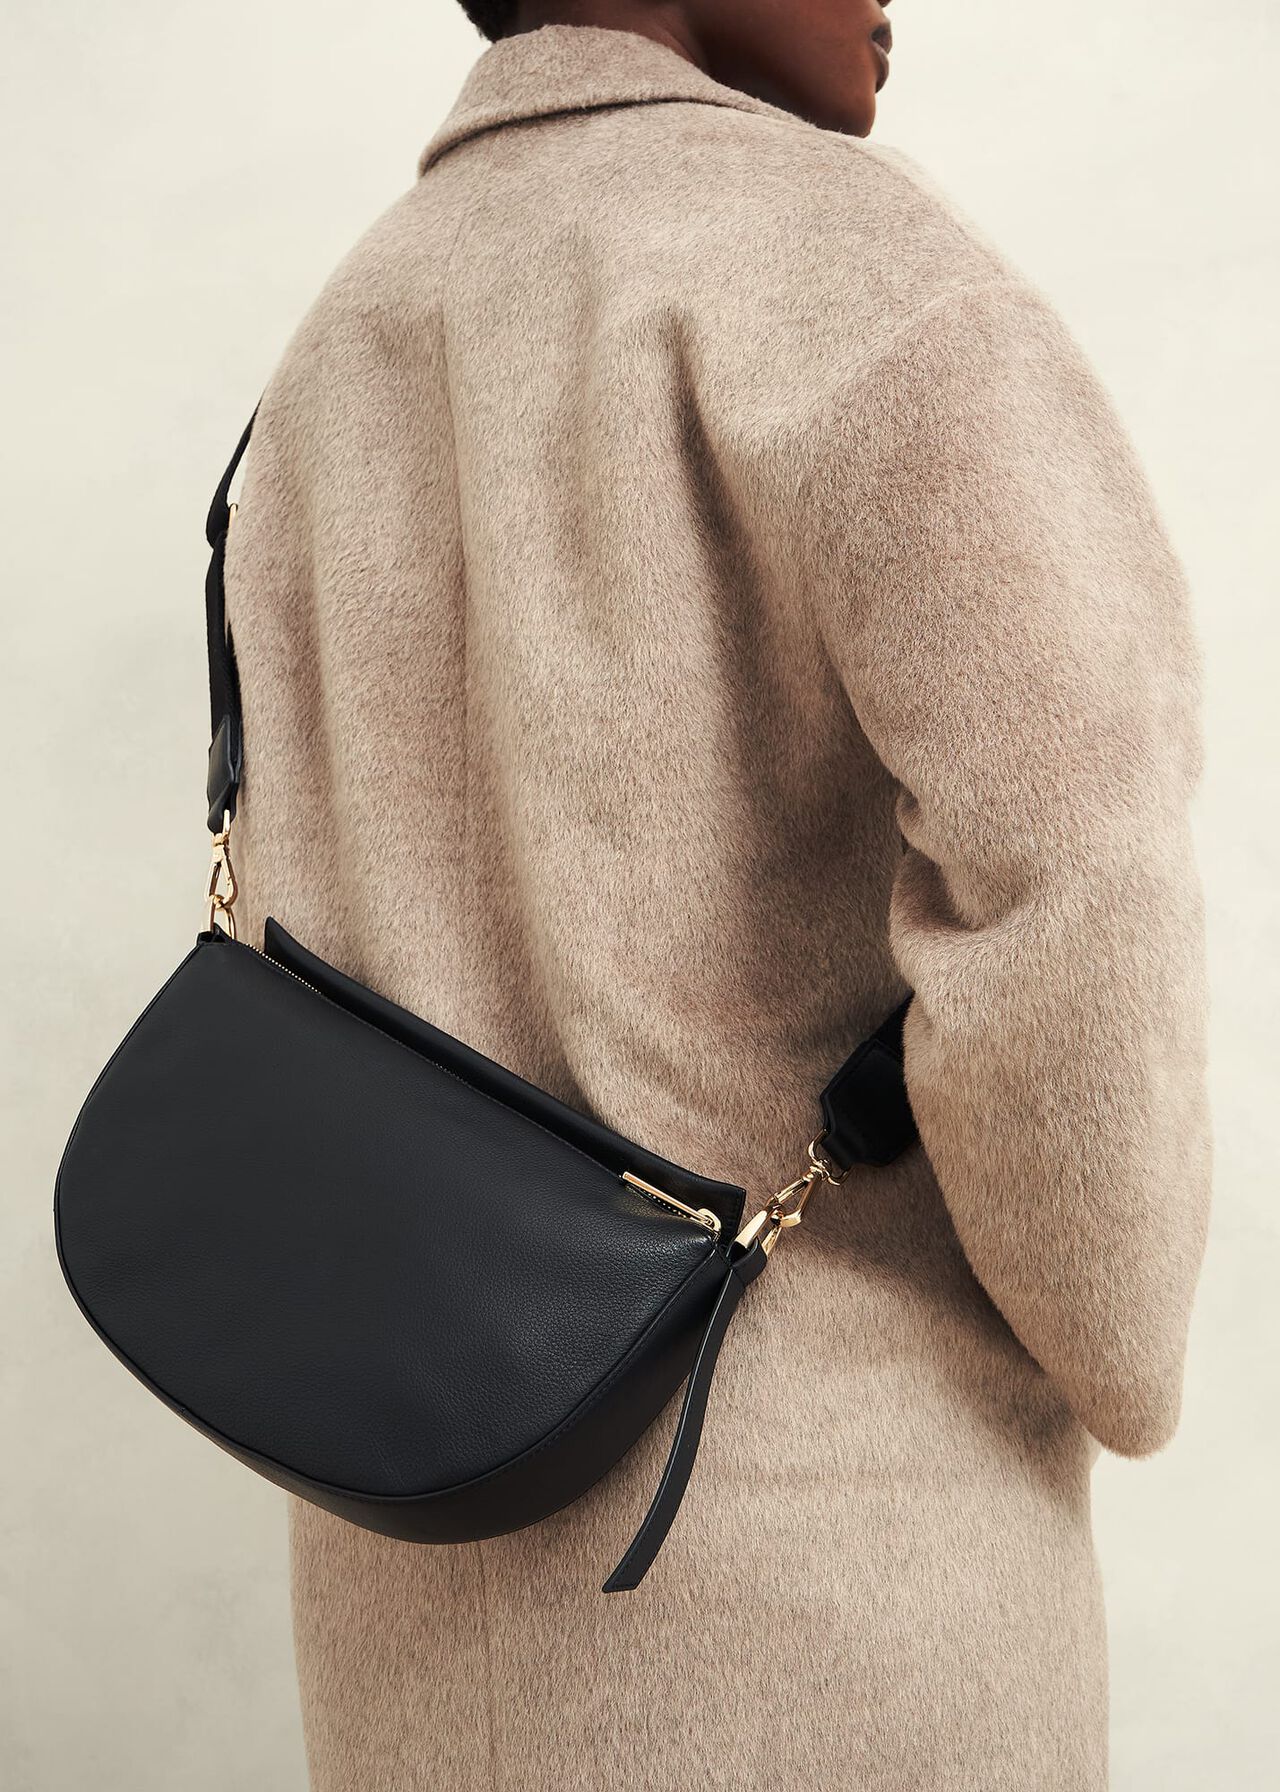 Chiswick Leather Shoulder Bag, Black, hi-res